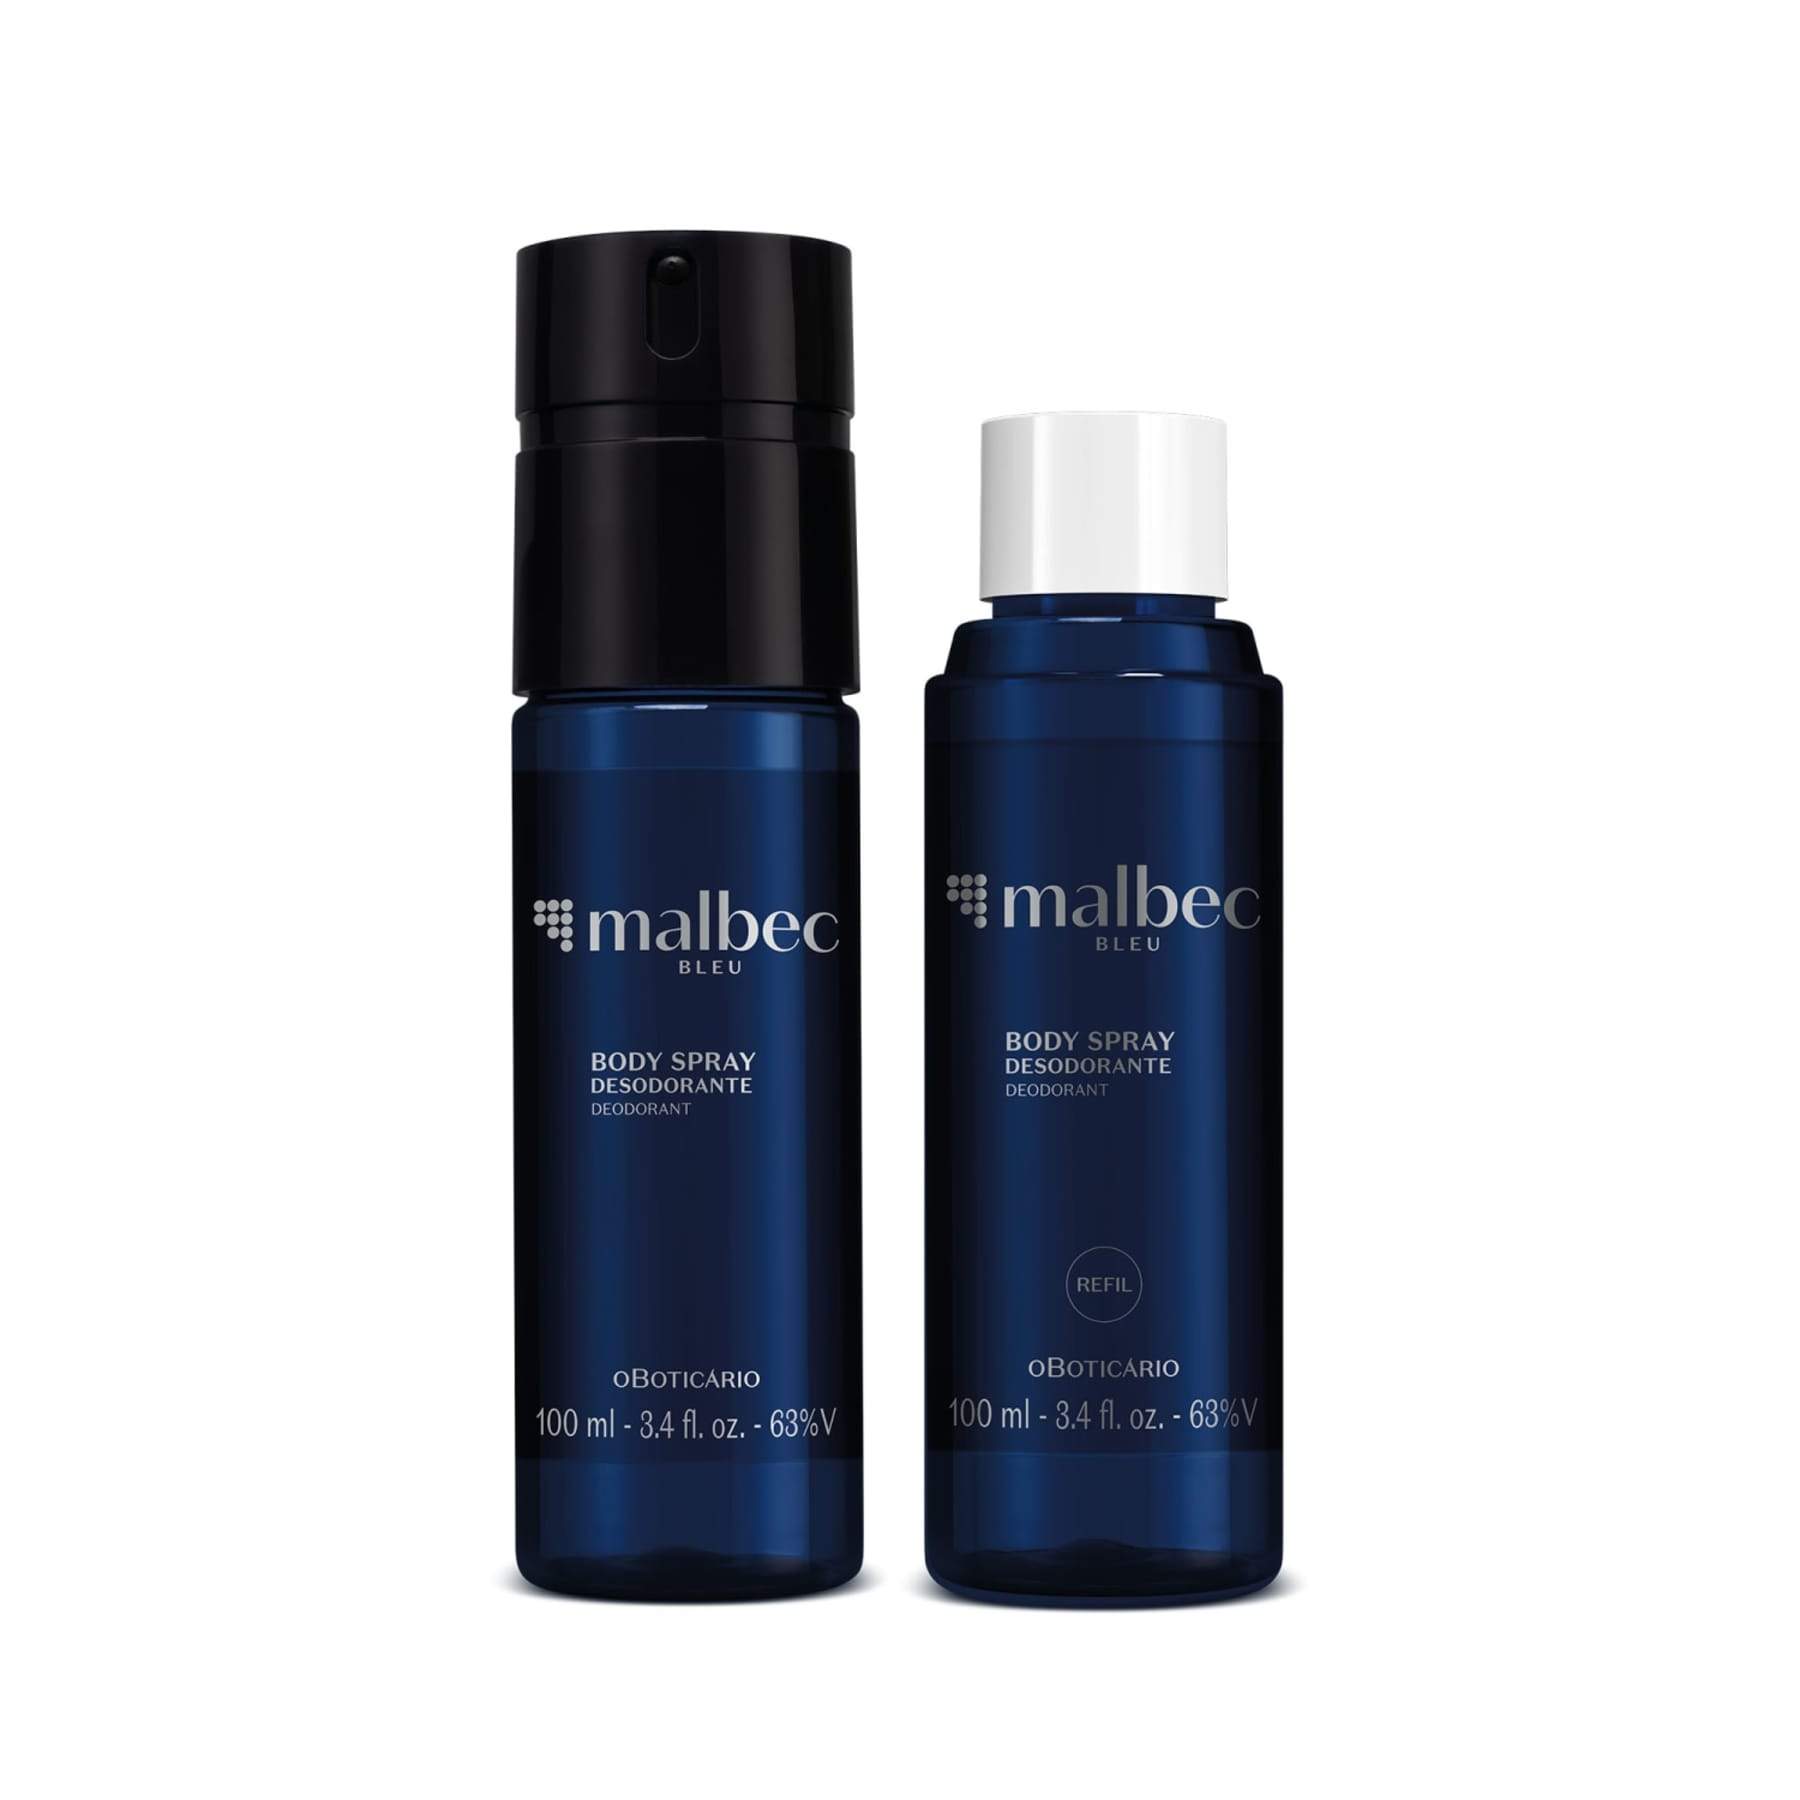 Kit Malbec Bleu: Body Spray 100ml + Refill 100ml - o Boticario